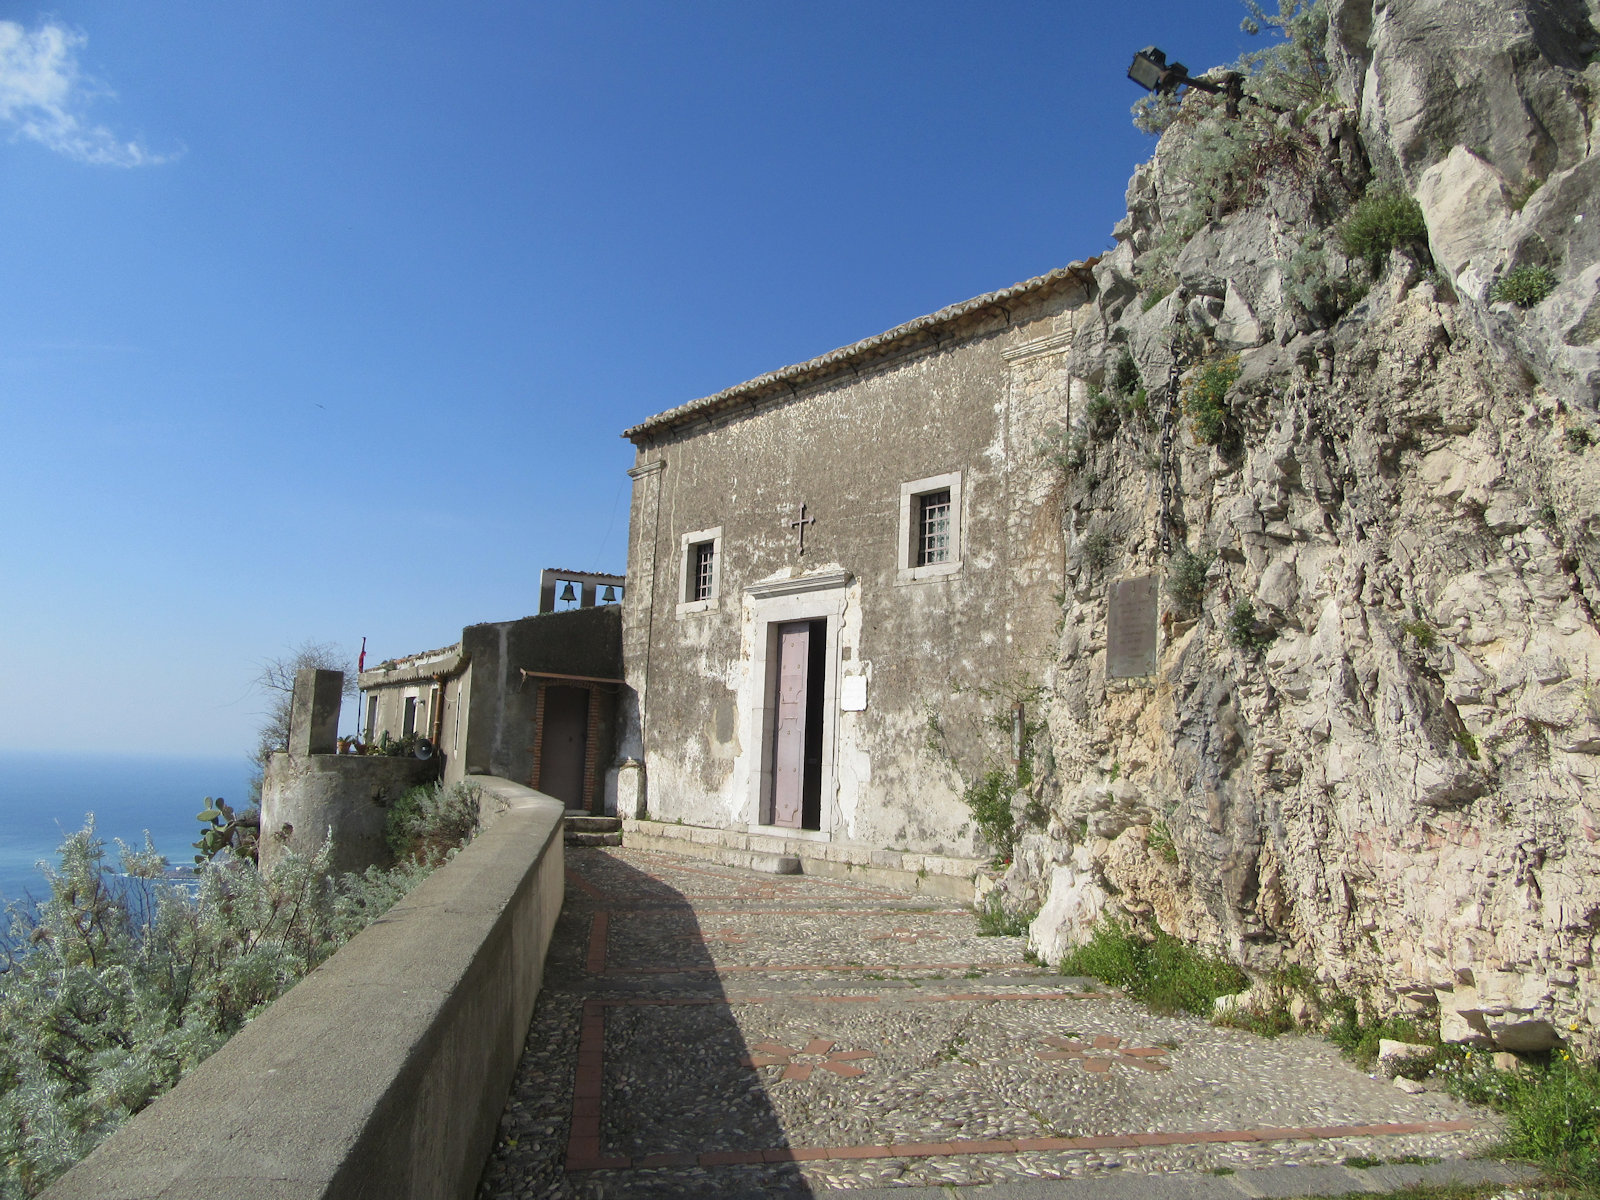 Santuario Madonna della Rocca oberhalb Taormina, nahe des früheren Kastells; früher war hier das Basilianerkloster